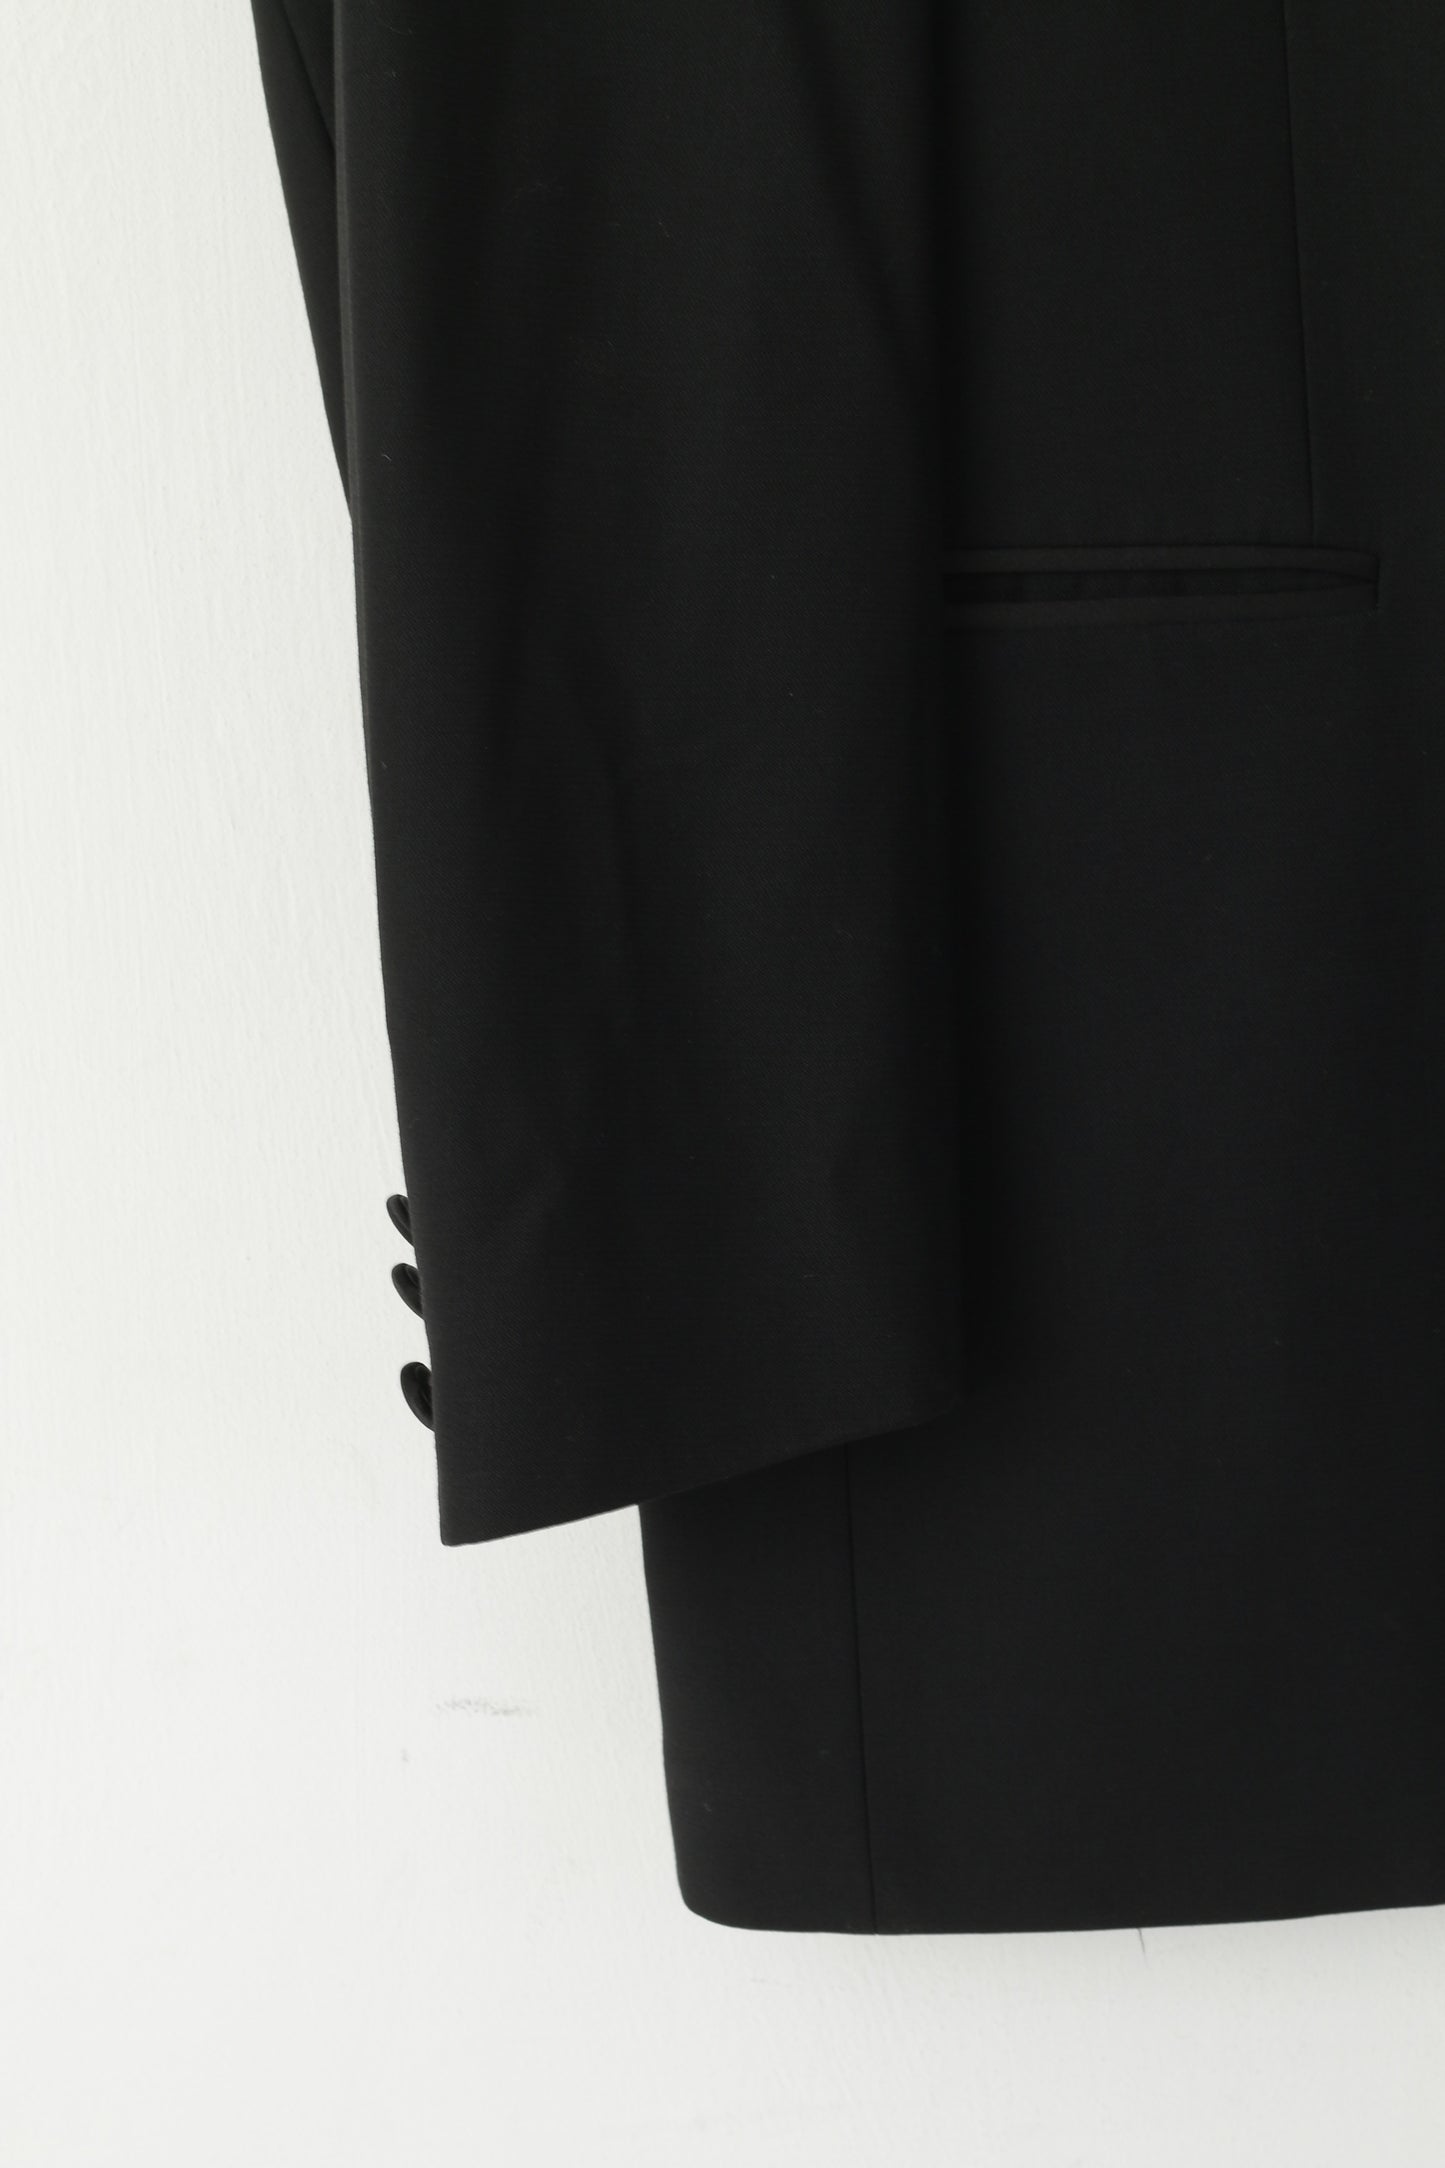 Pierre Cardin Uomo 42 52 Blazer Abito top in lana nera Giacca elegante monopetto lucida